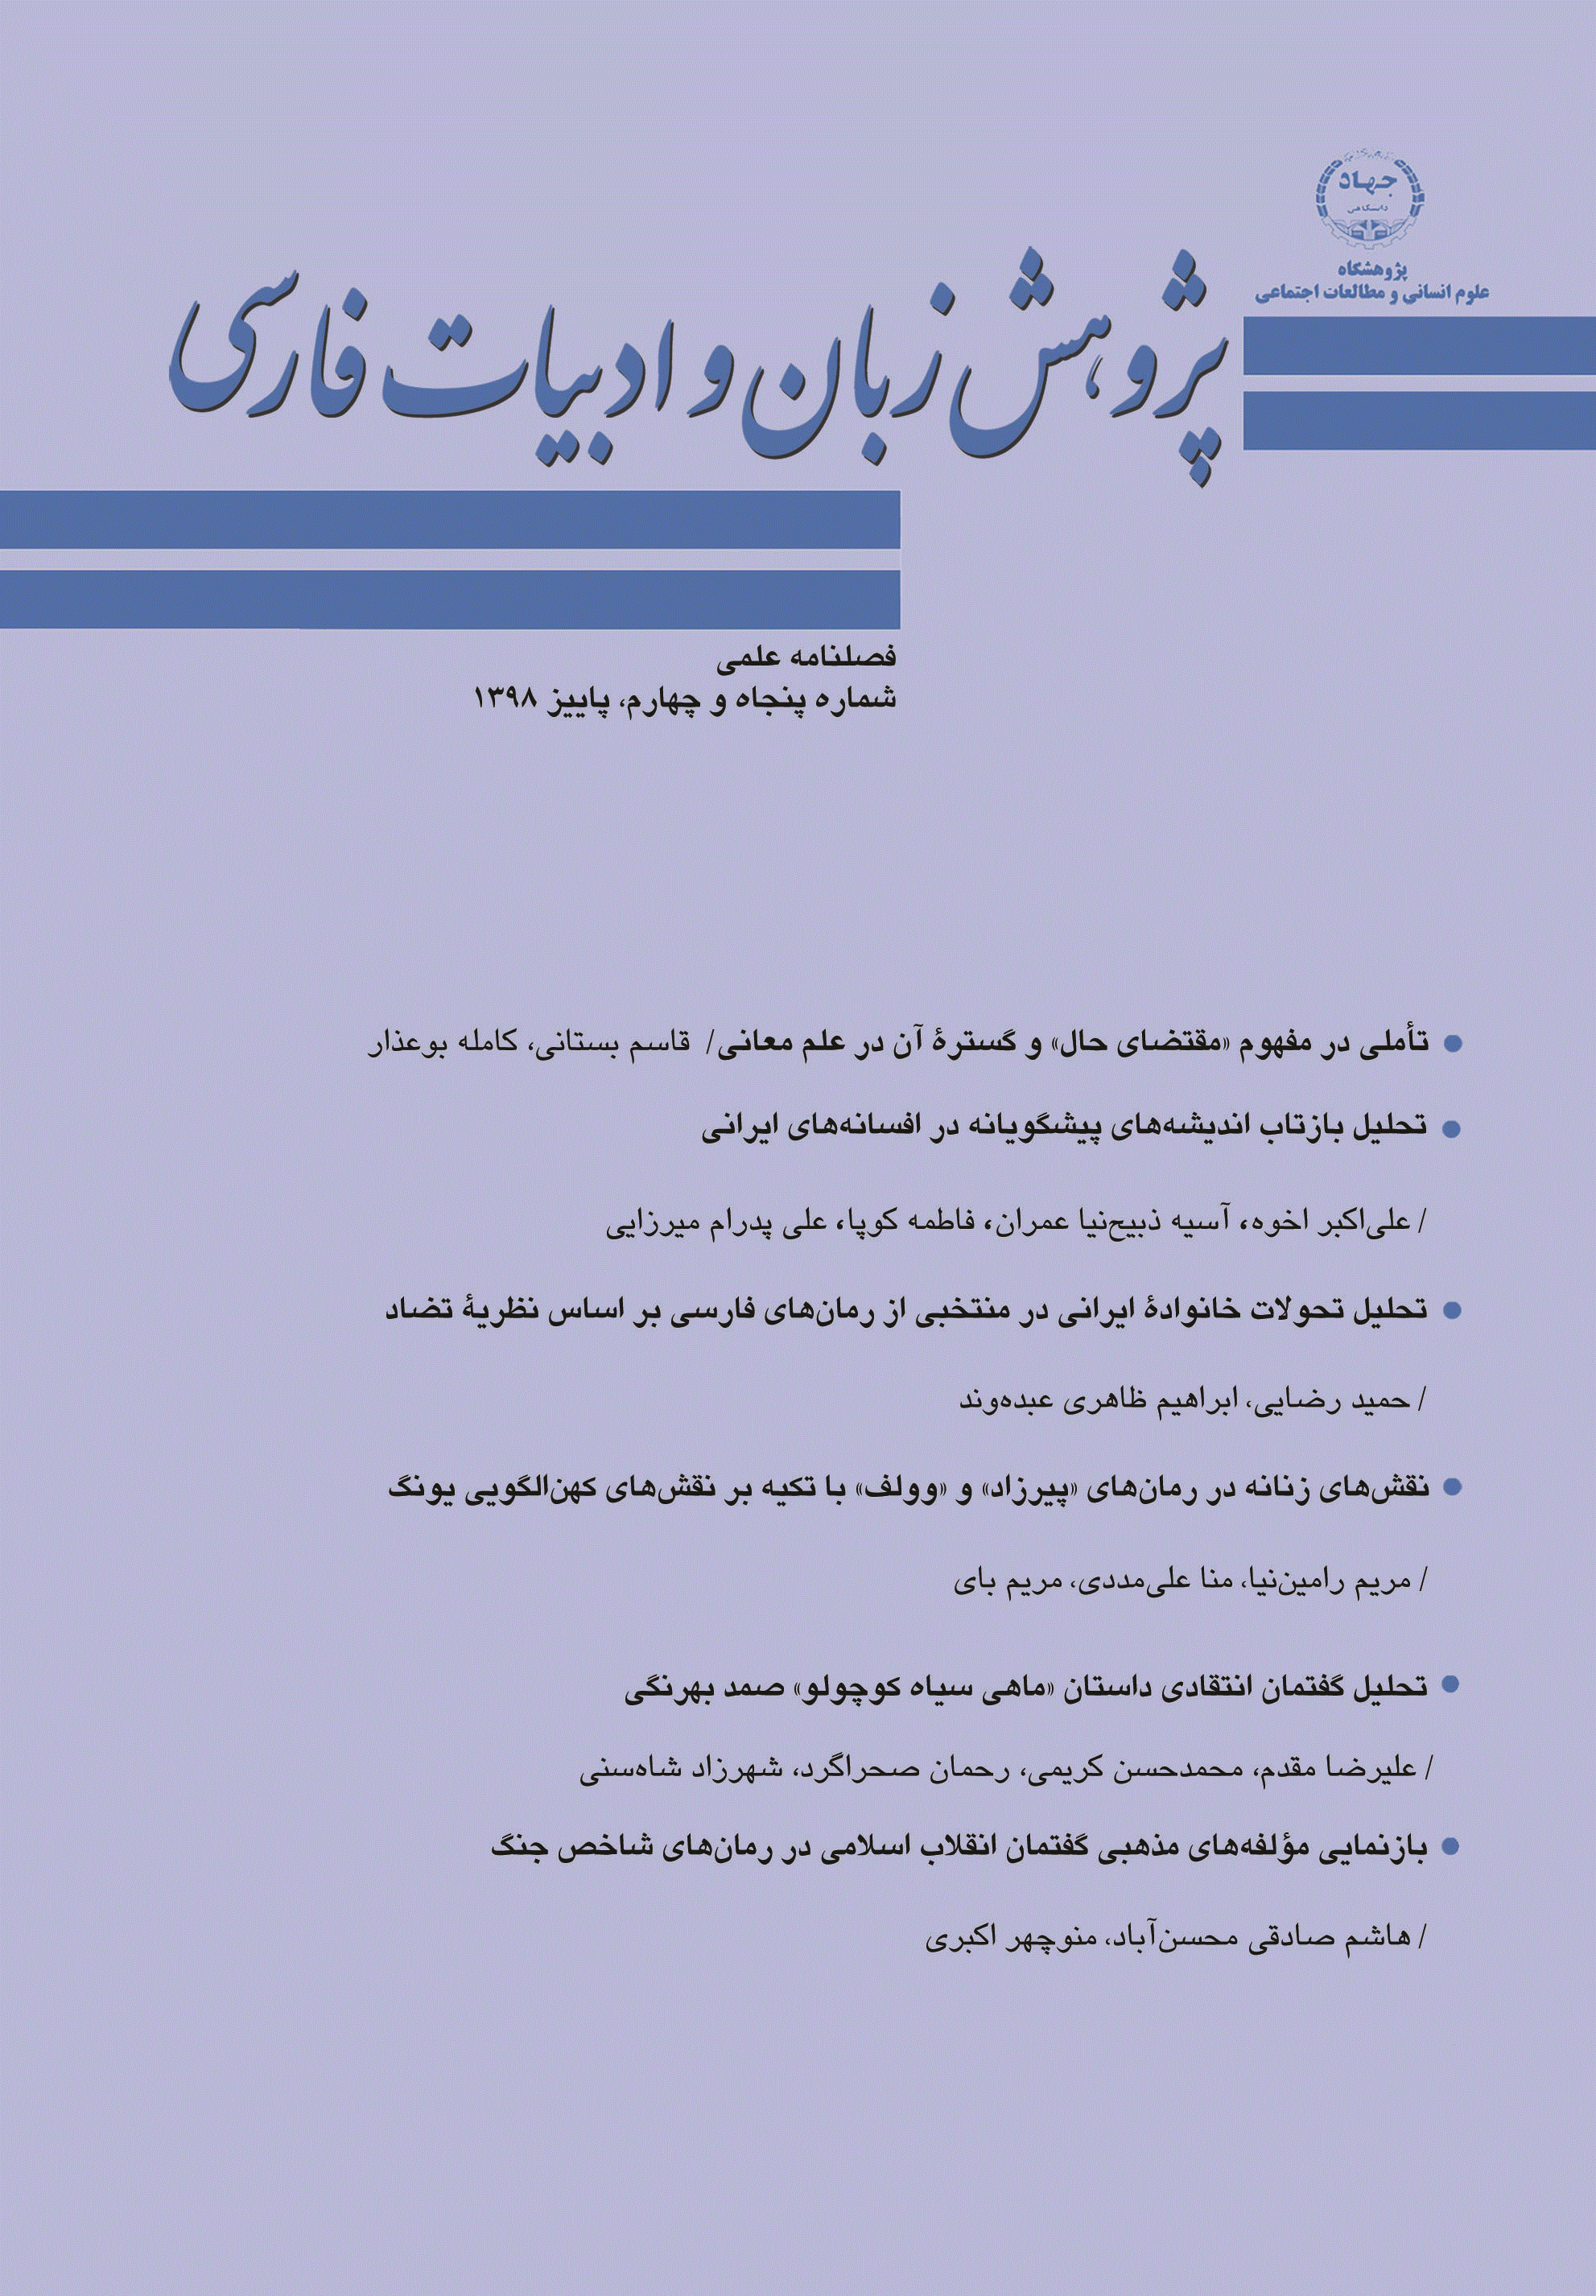 پژوهش زبان و ادبیات فارسی - پاییز 1398 - شماره 54